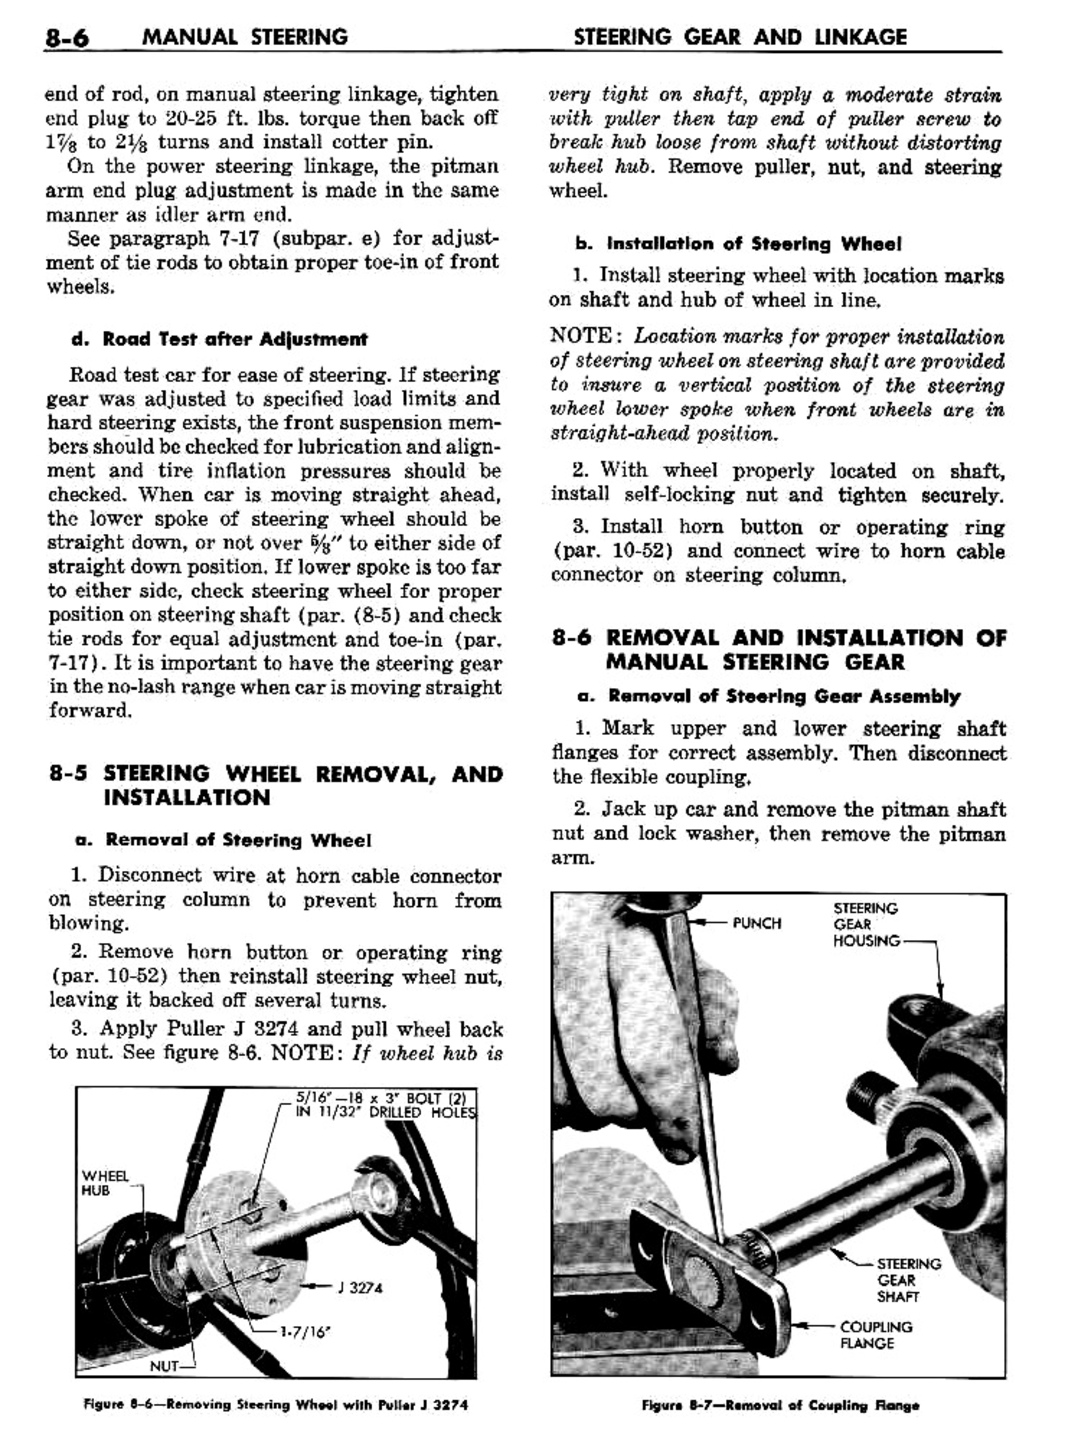 n_09 1957 Buick Shop Manual - Steering-006-006.jpg